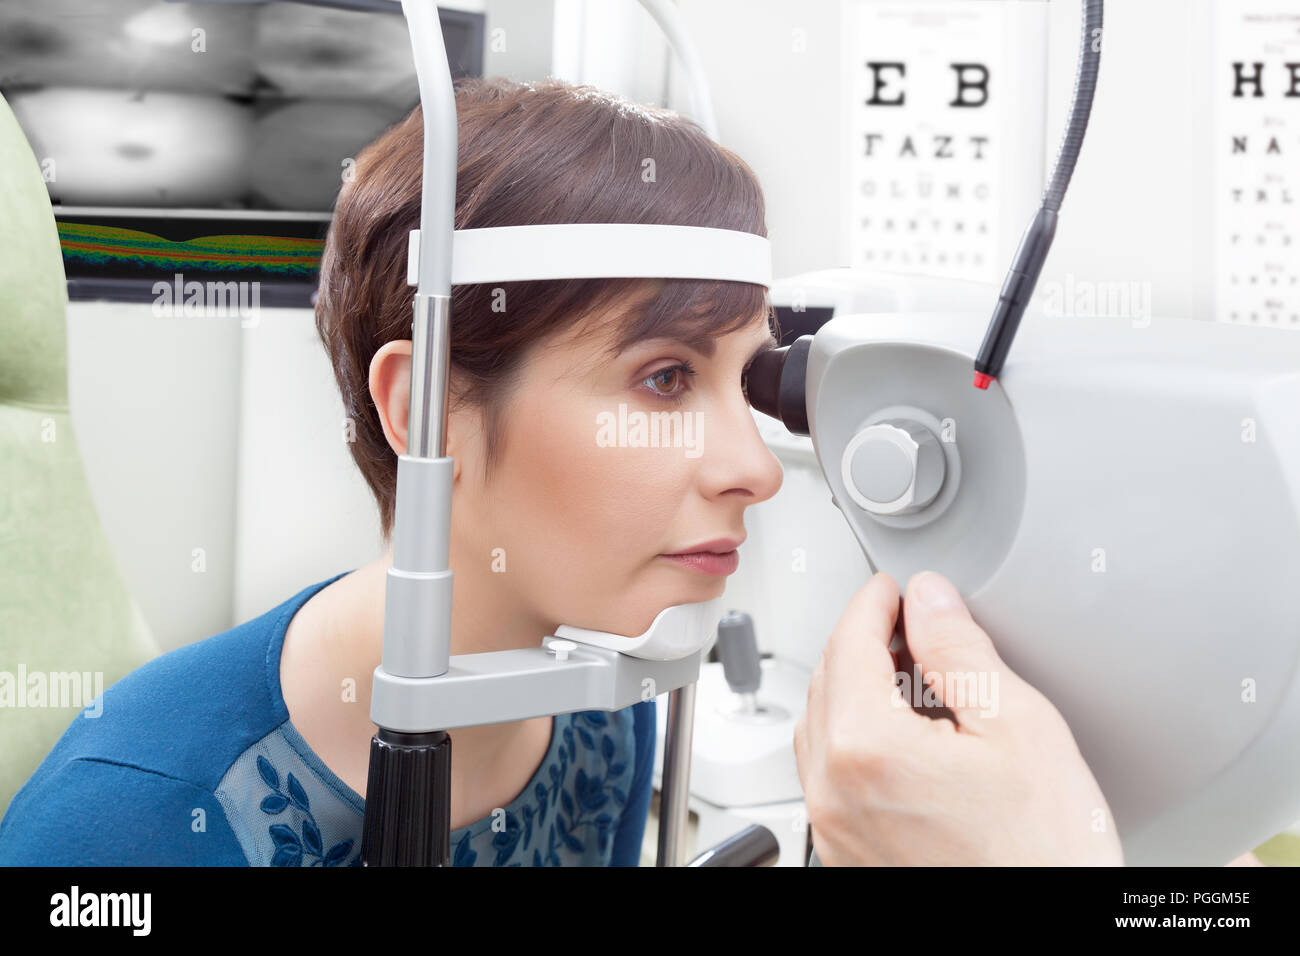 Femme avec coupe courte close-up de son côté avoir l'examen des yeux à l'ophtalmologie à l'hôpital, homme de chambre de réglage d'oculiste le dispositif en fo Banque D'Images